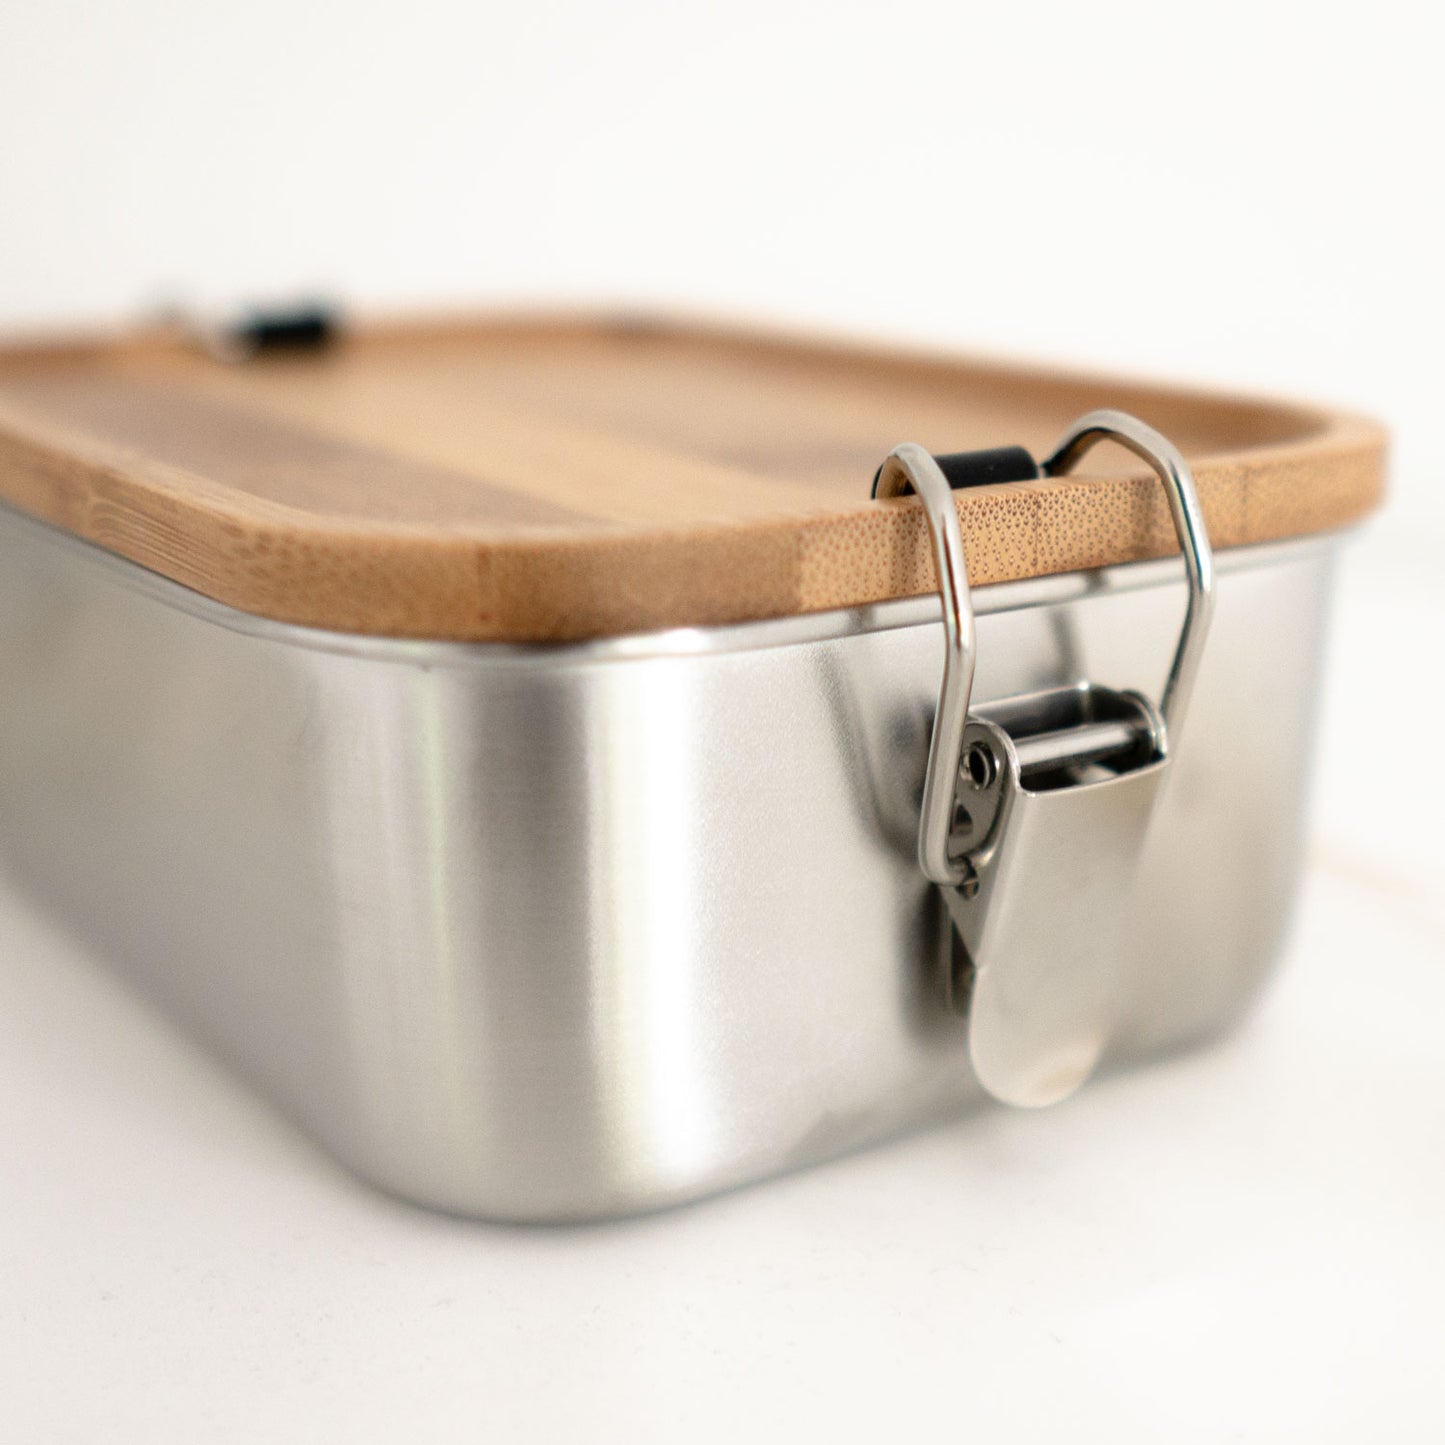 Lunchbox "Hunde-Silhouette + Herz" mit Bambusdeckel | personalisiert | Brotdose, Geschenk